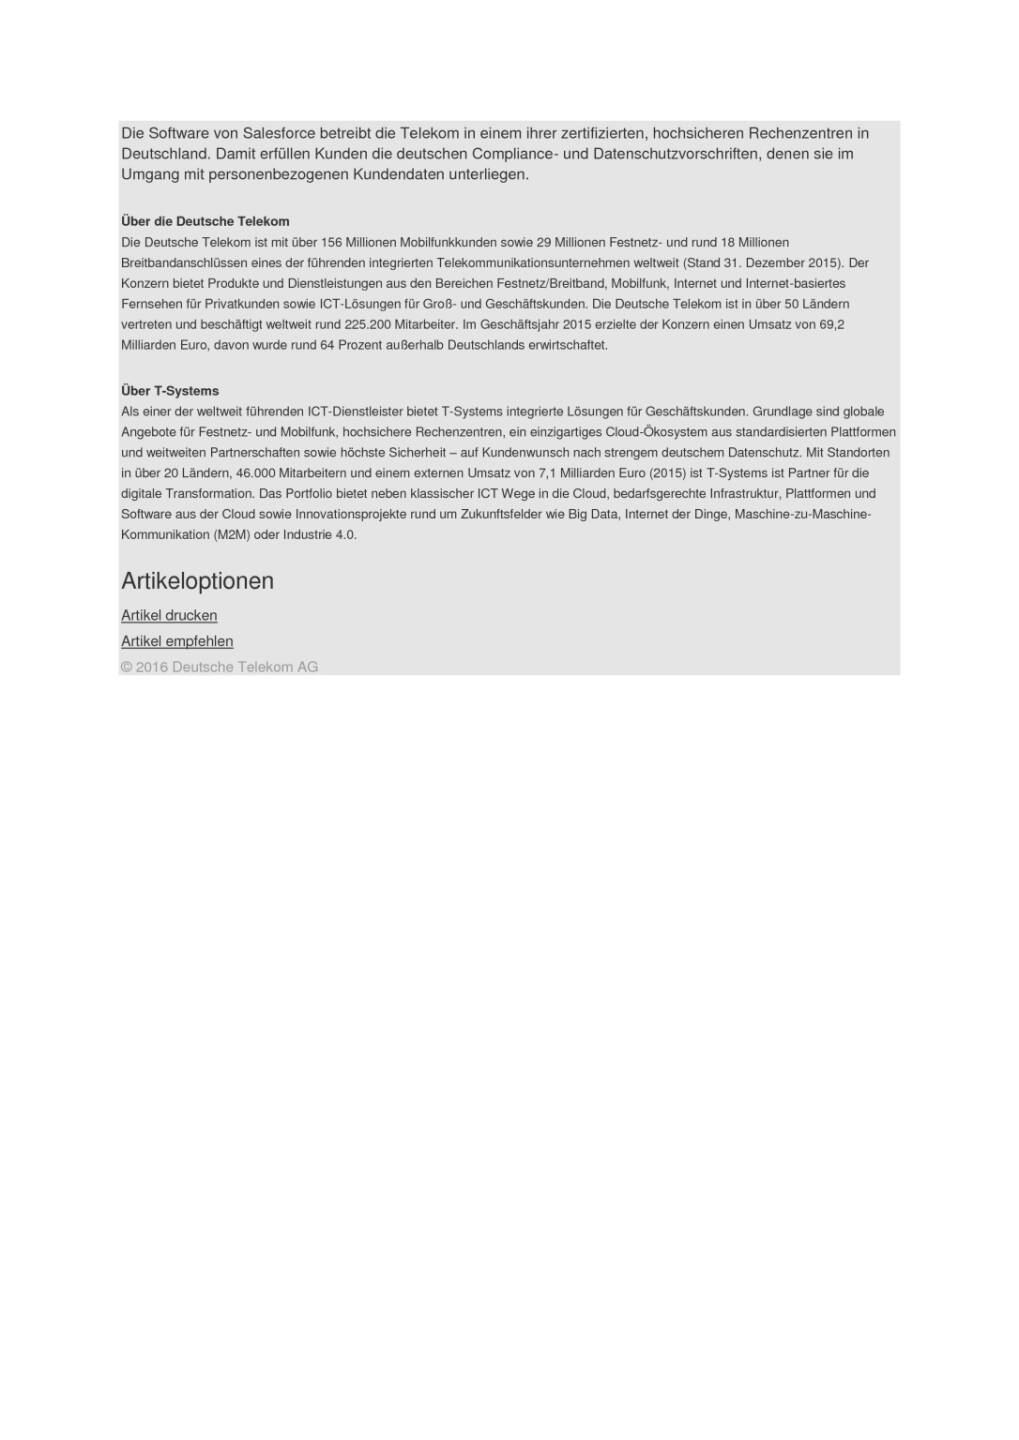 Telekom: Exklusiv-Pakete bei Einstieg in Salesforce, Seite 2/2, komplettes Dokument unter http://boerse-social.com/static/uploads/file_1741_telekom_exklusiv-pakete_bei_einstieg_in_salesforce.pdf